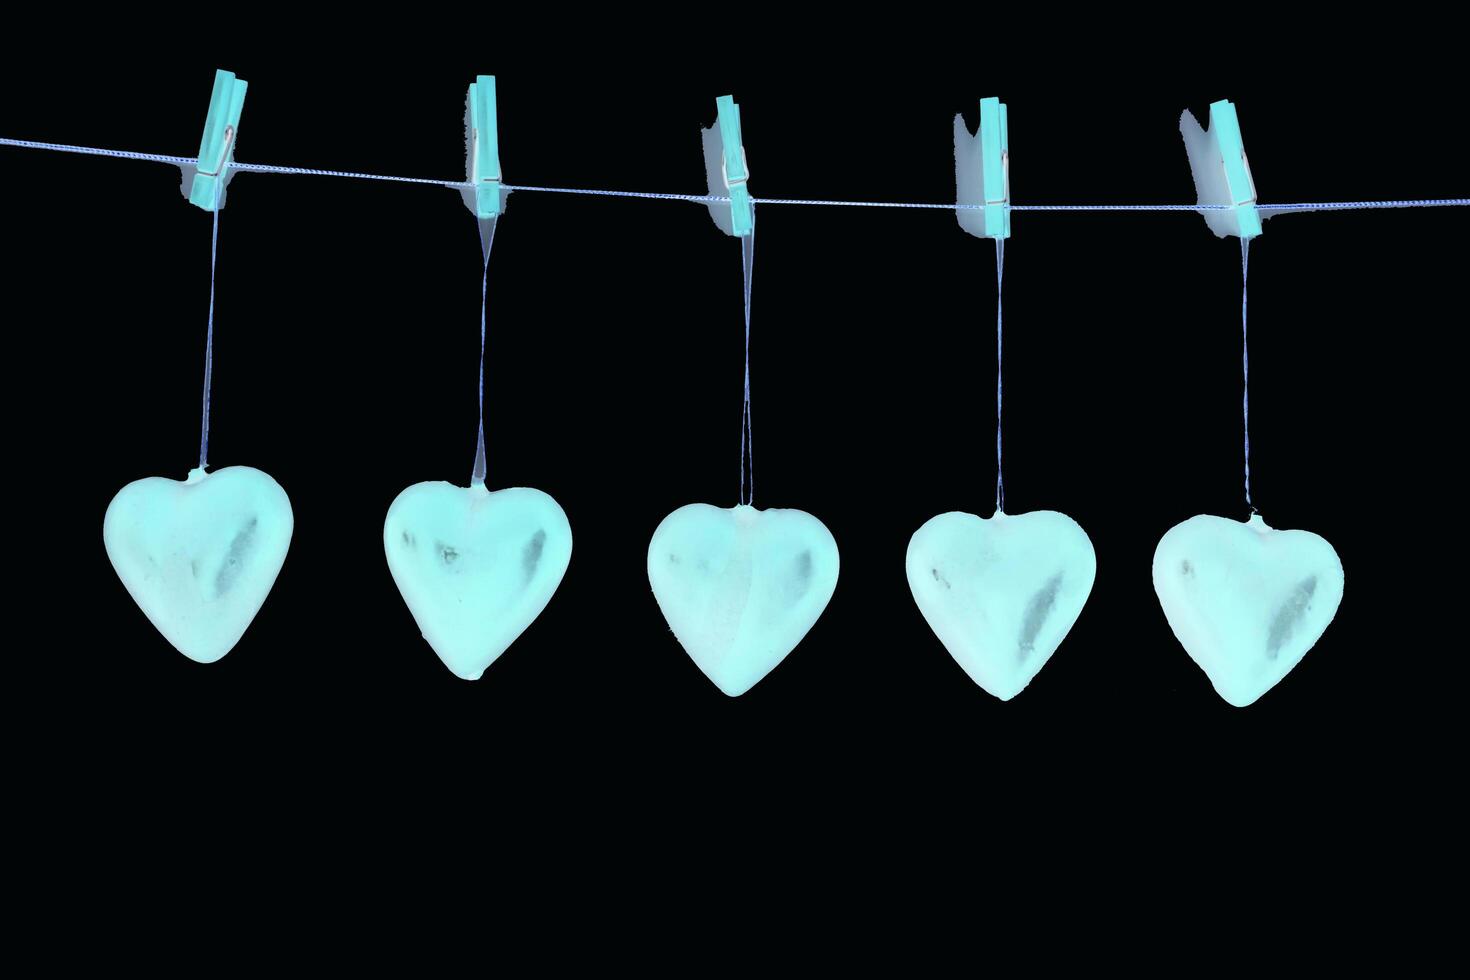 vijf harten hangen van een lijn met haringen foto